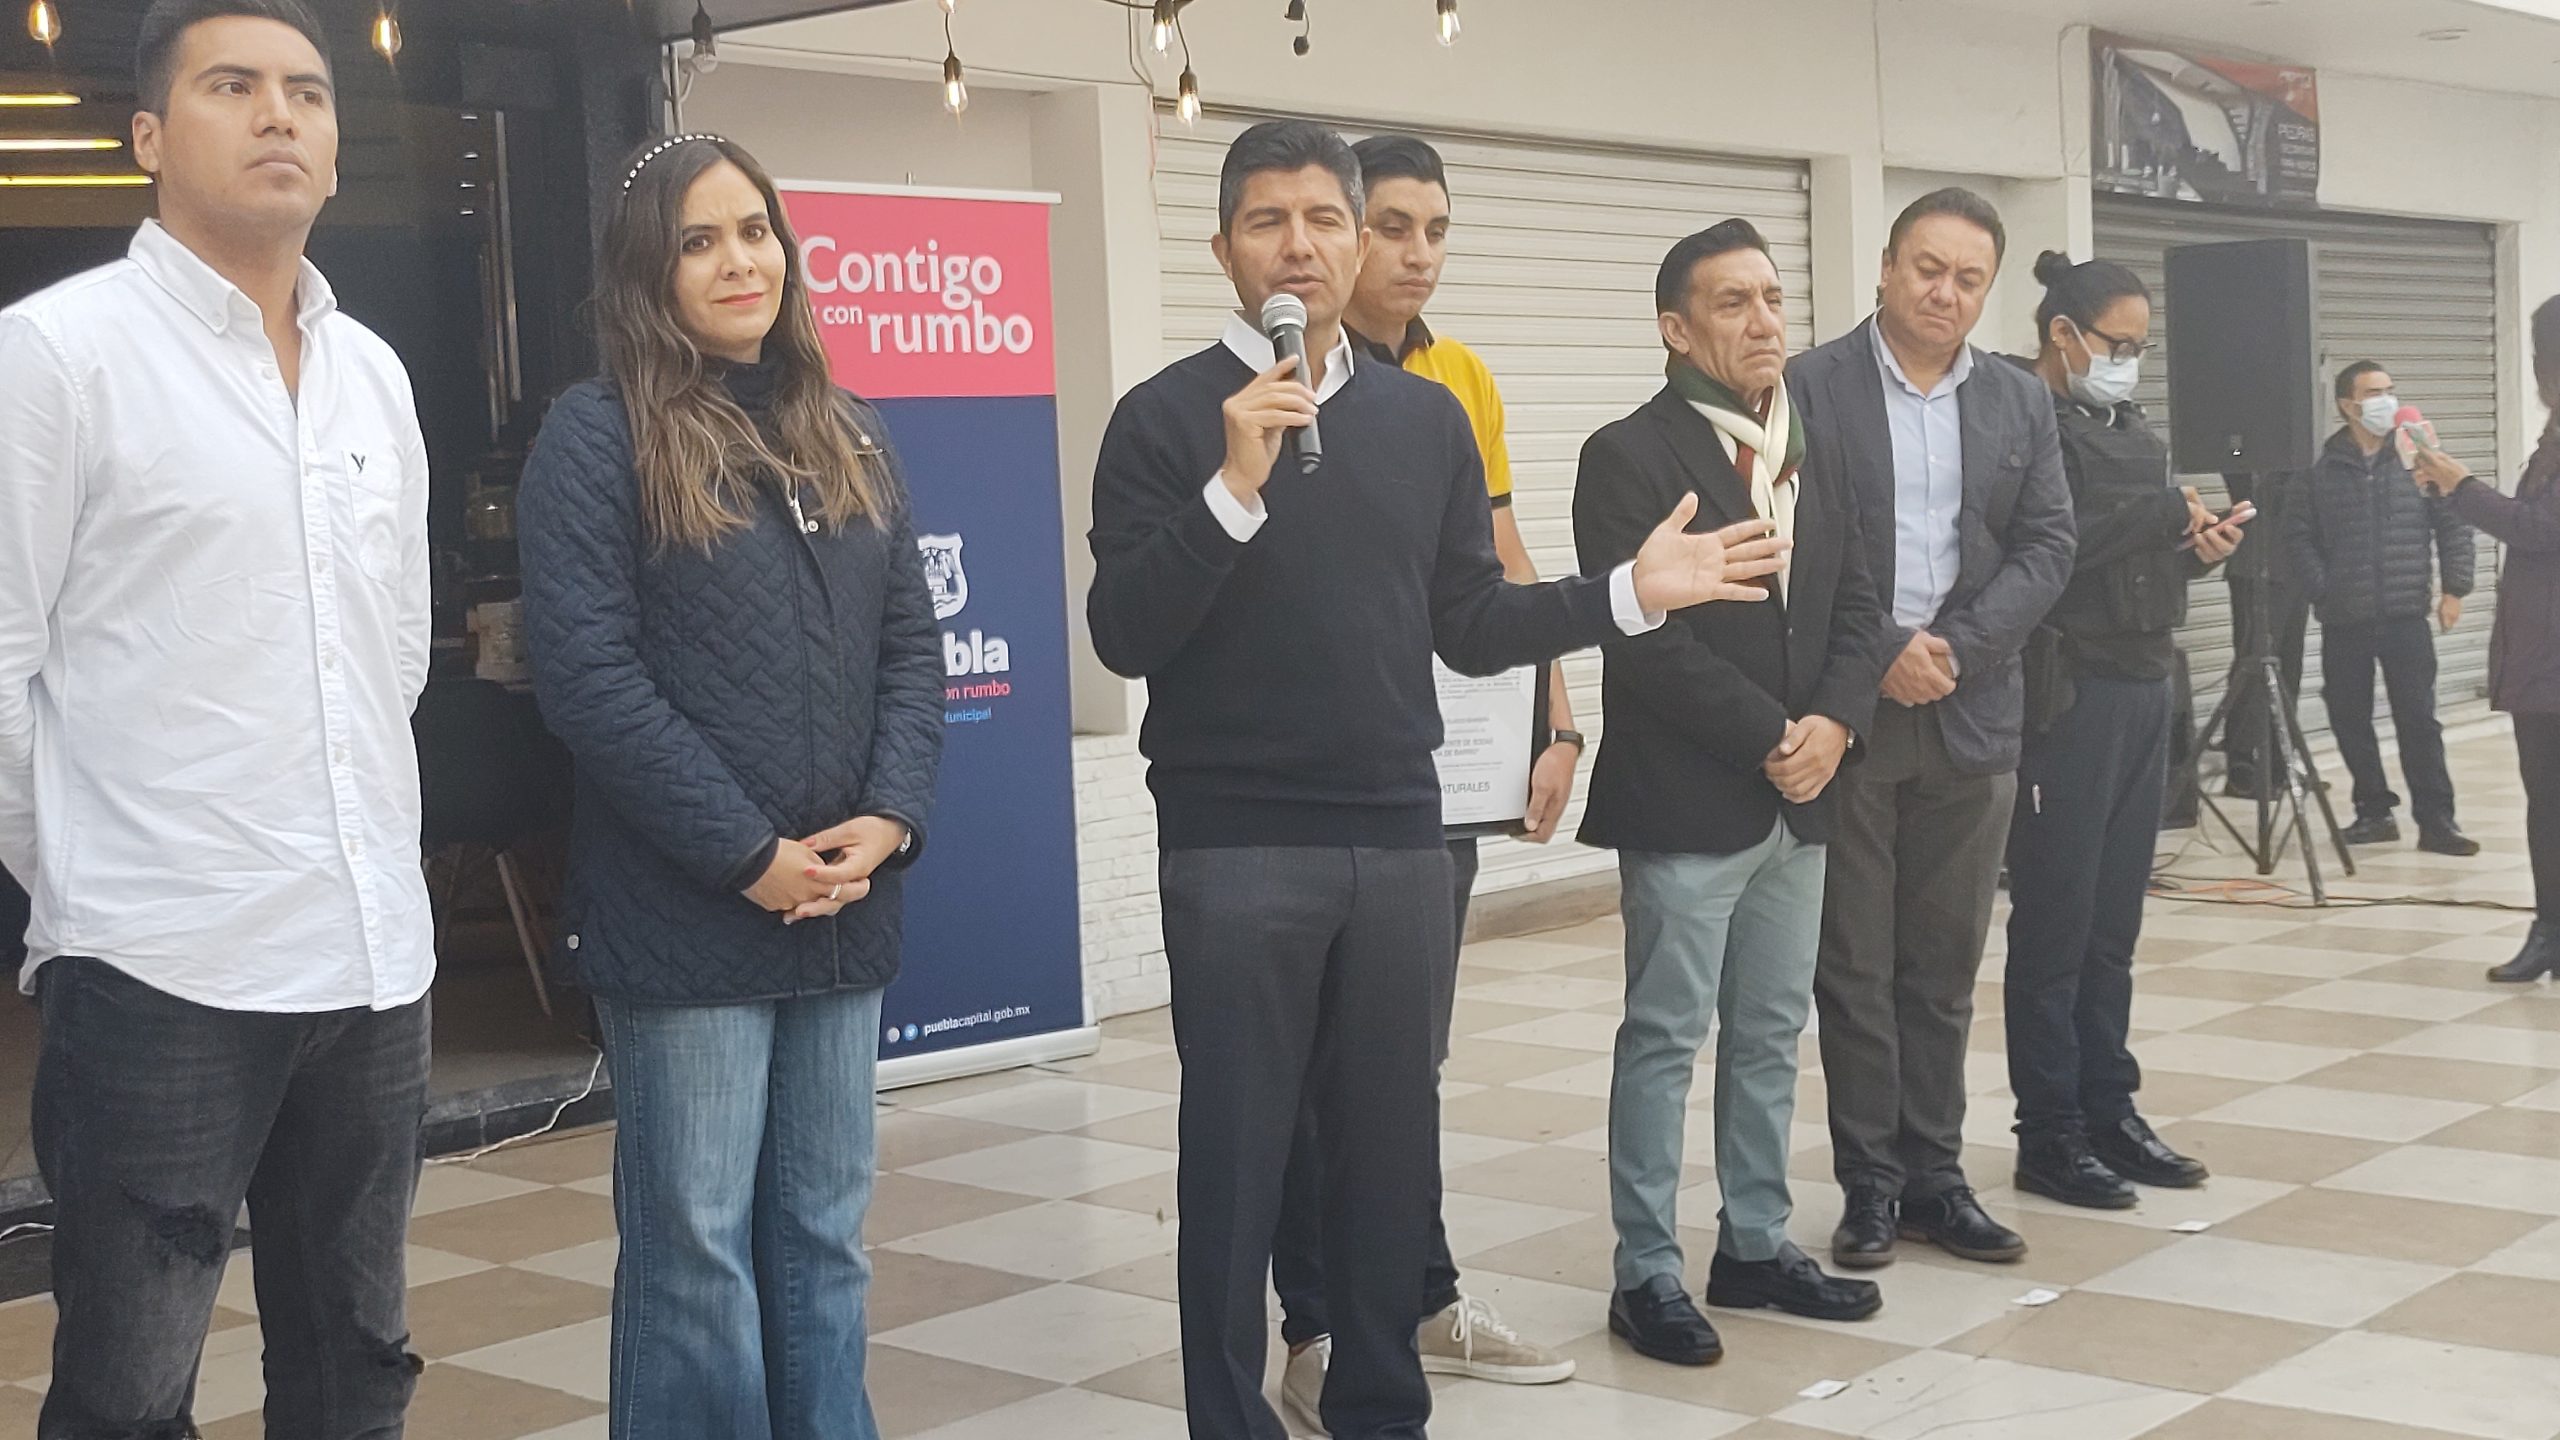 Video desde Puebla: Ayuntamiento, dispuesto a colaborar contra el uso de clonazepam en jóvenes, señaló Eduardo Rivera